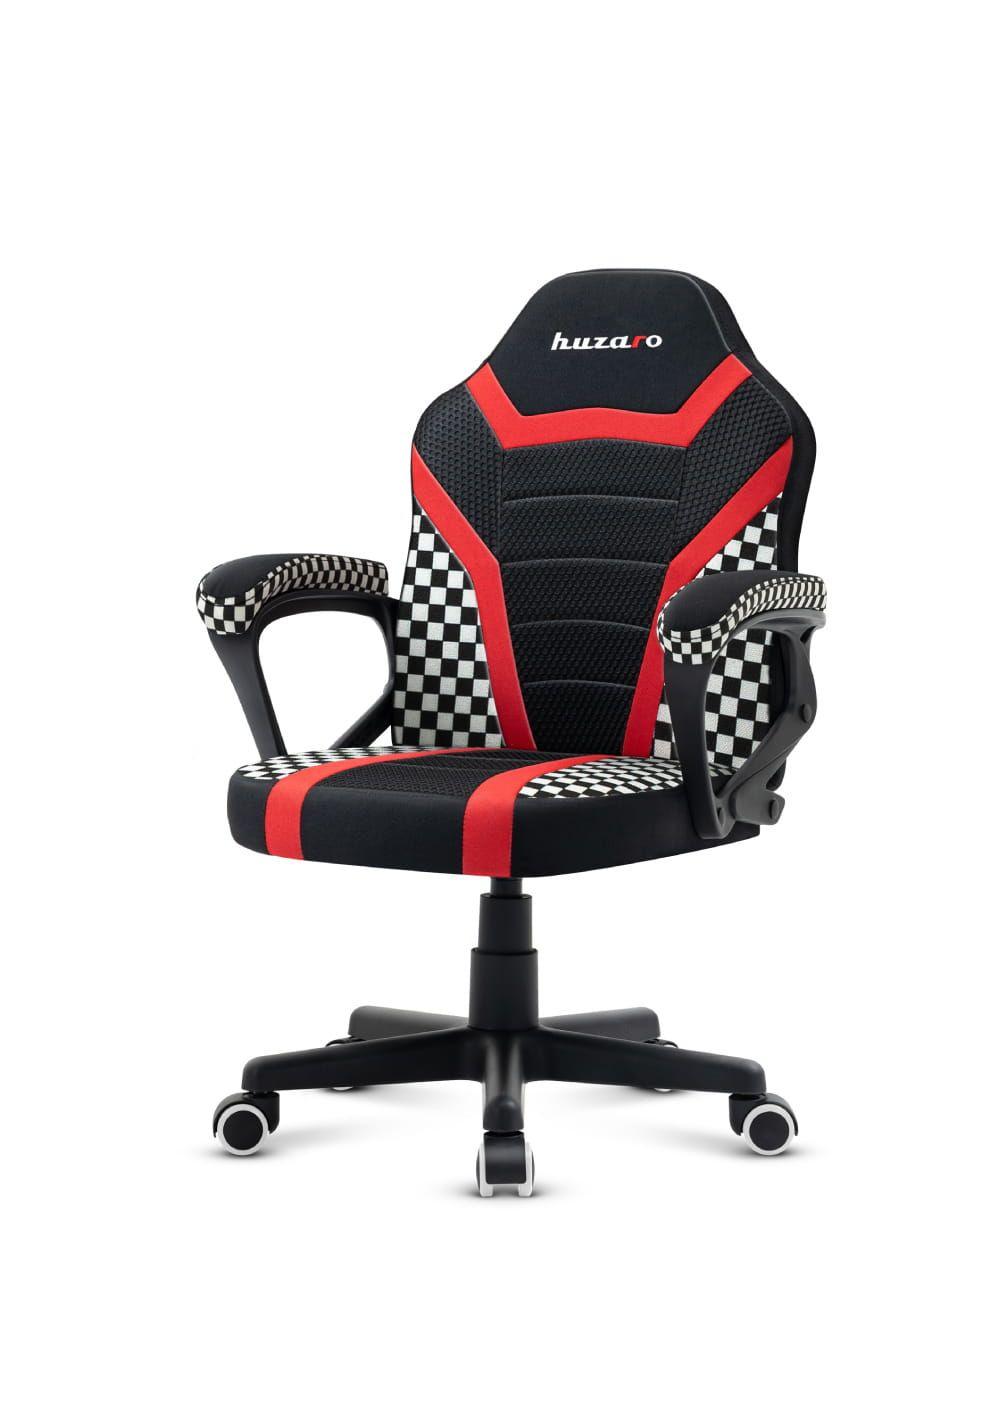 Gaming chair for children Huzaro Ranger 1.0 Red Mesh, black, red, white